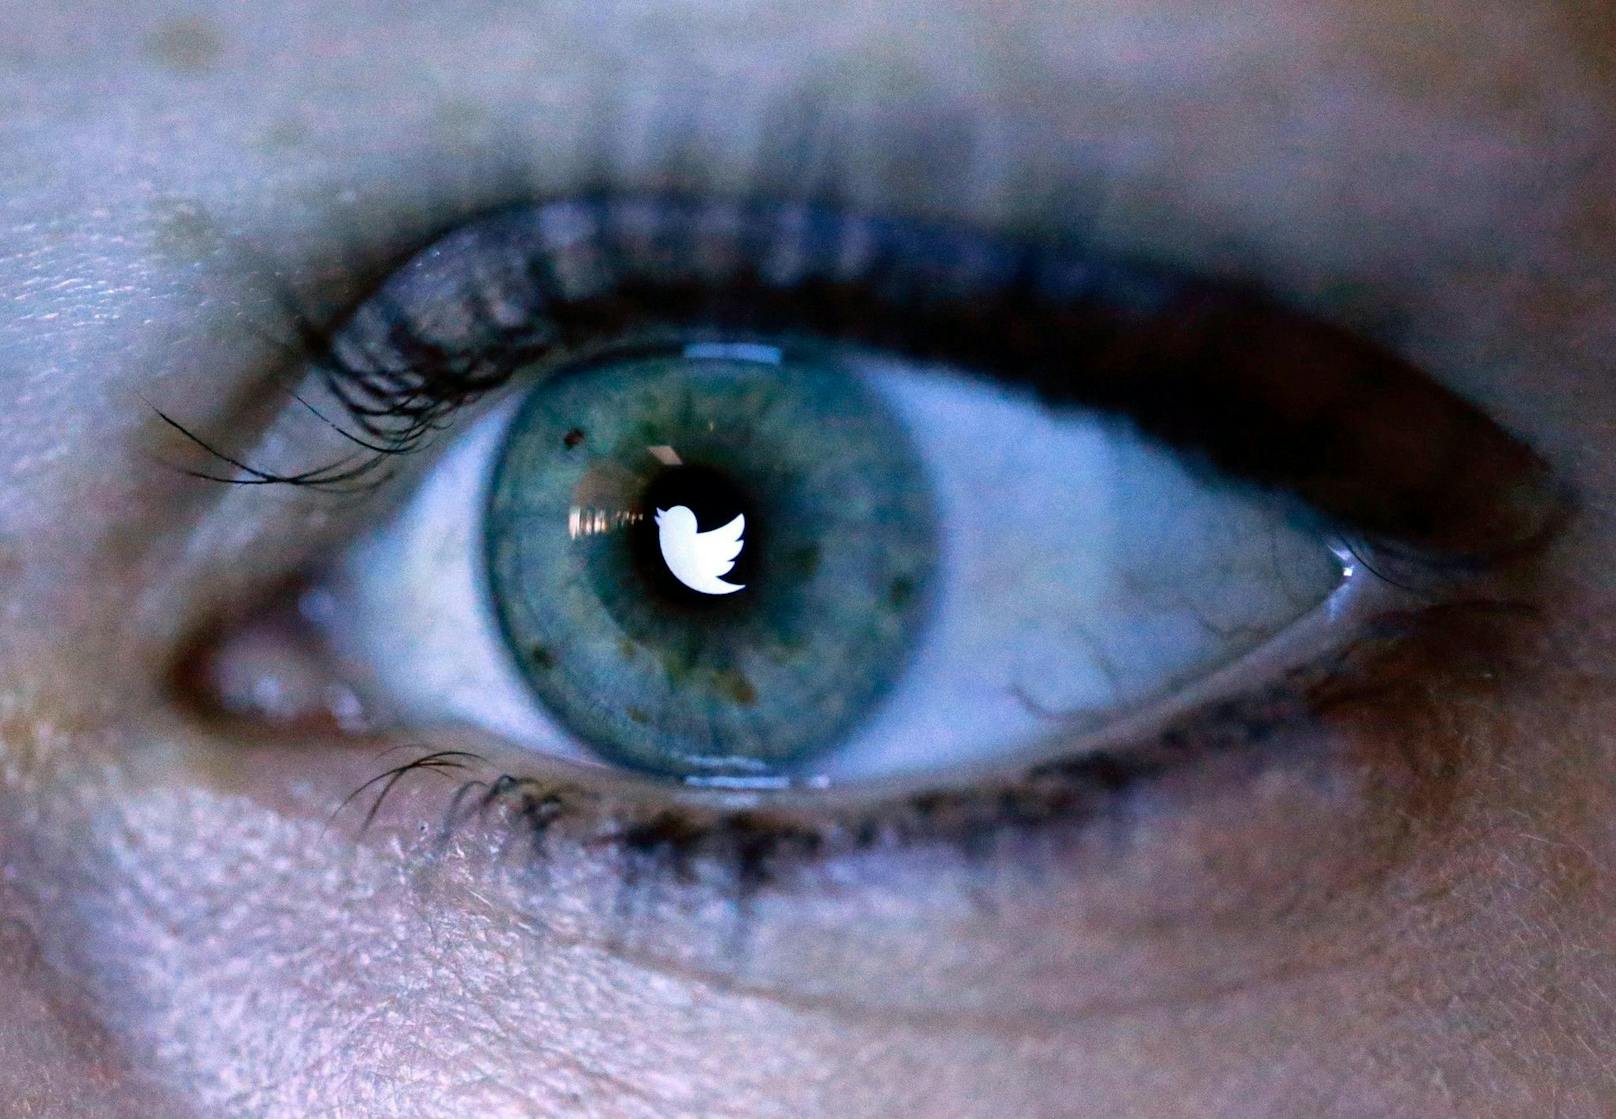 Daten von 235 Millionen Twitter-Nutzerinnen und -Nutzern landeten im Netz.